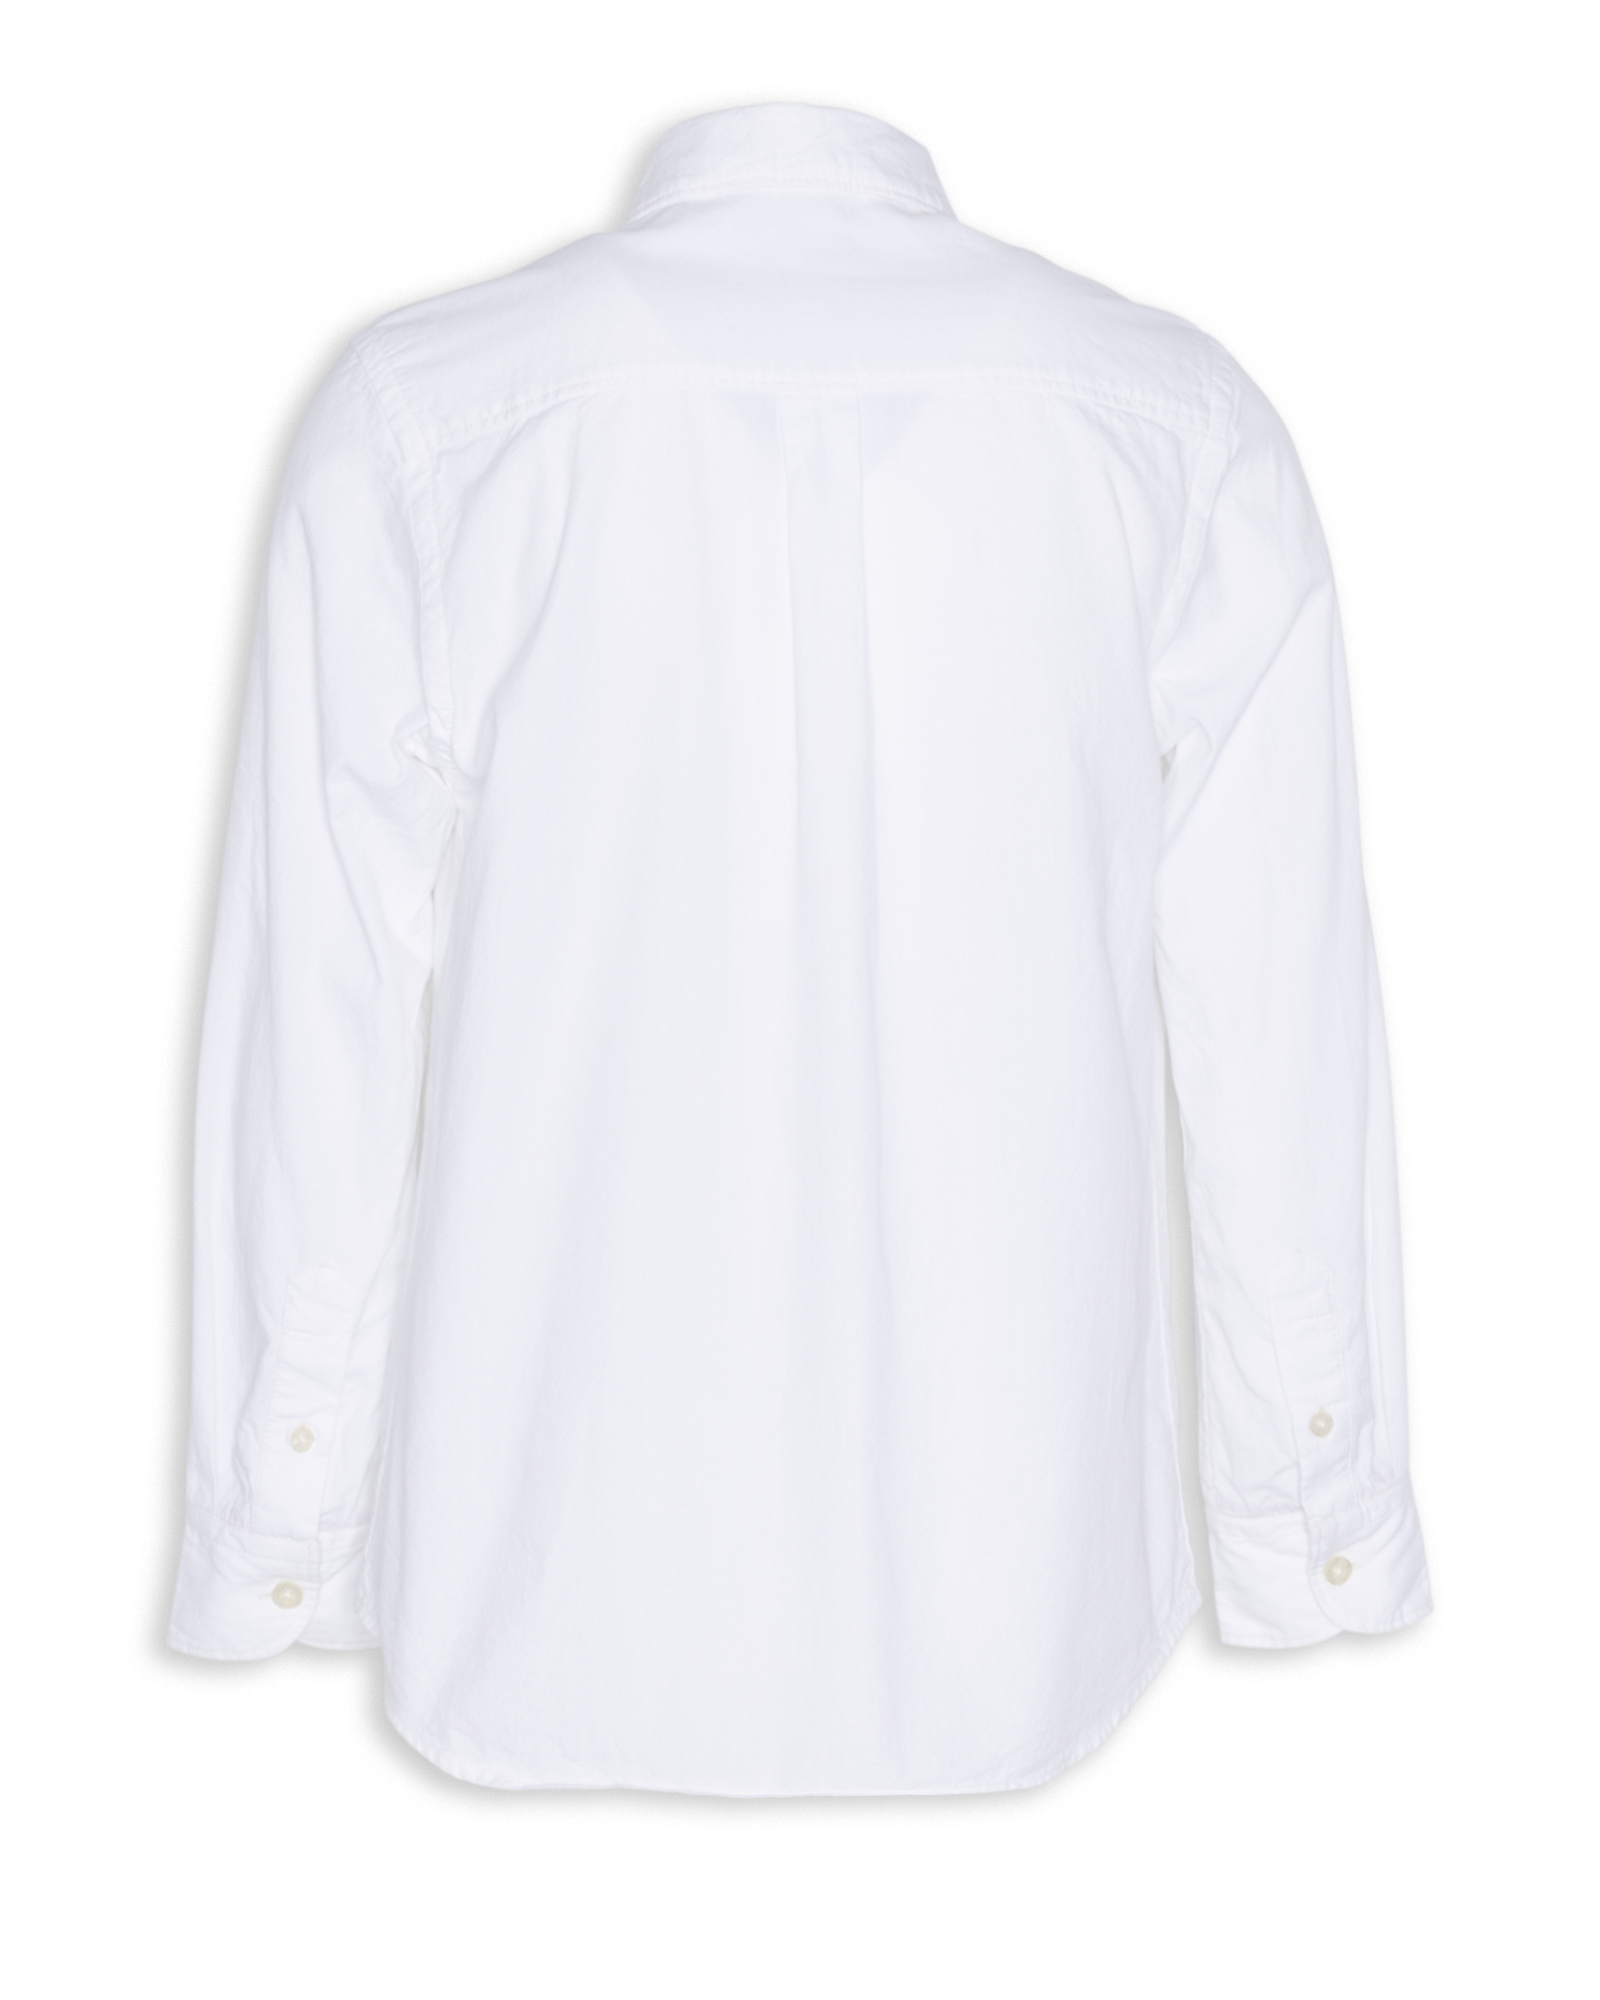 Alan Oxford Shirts - White